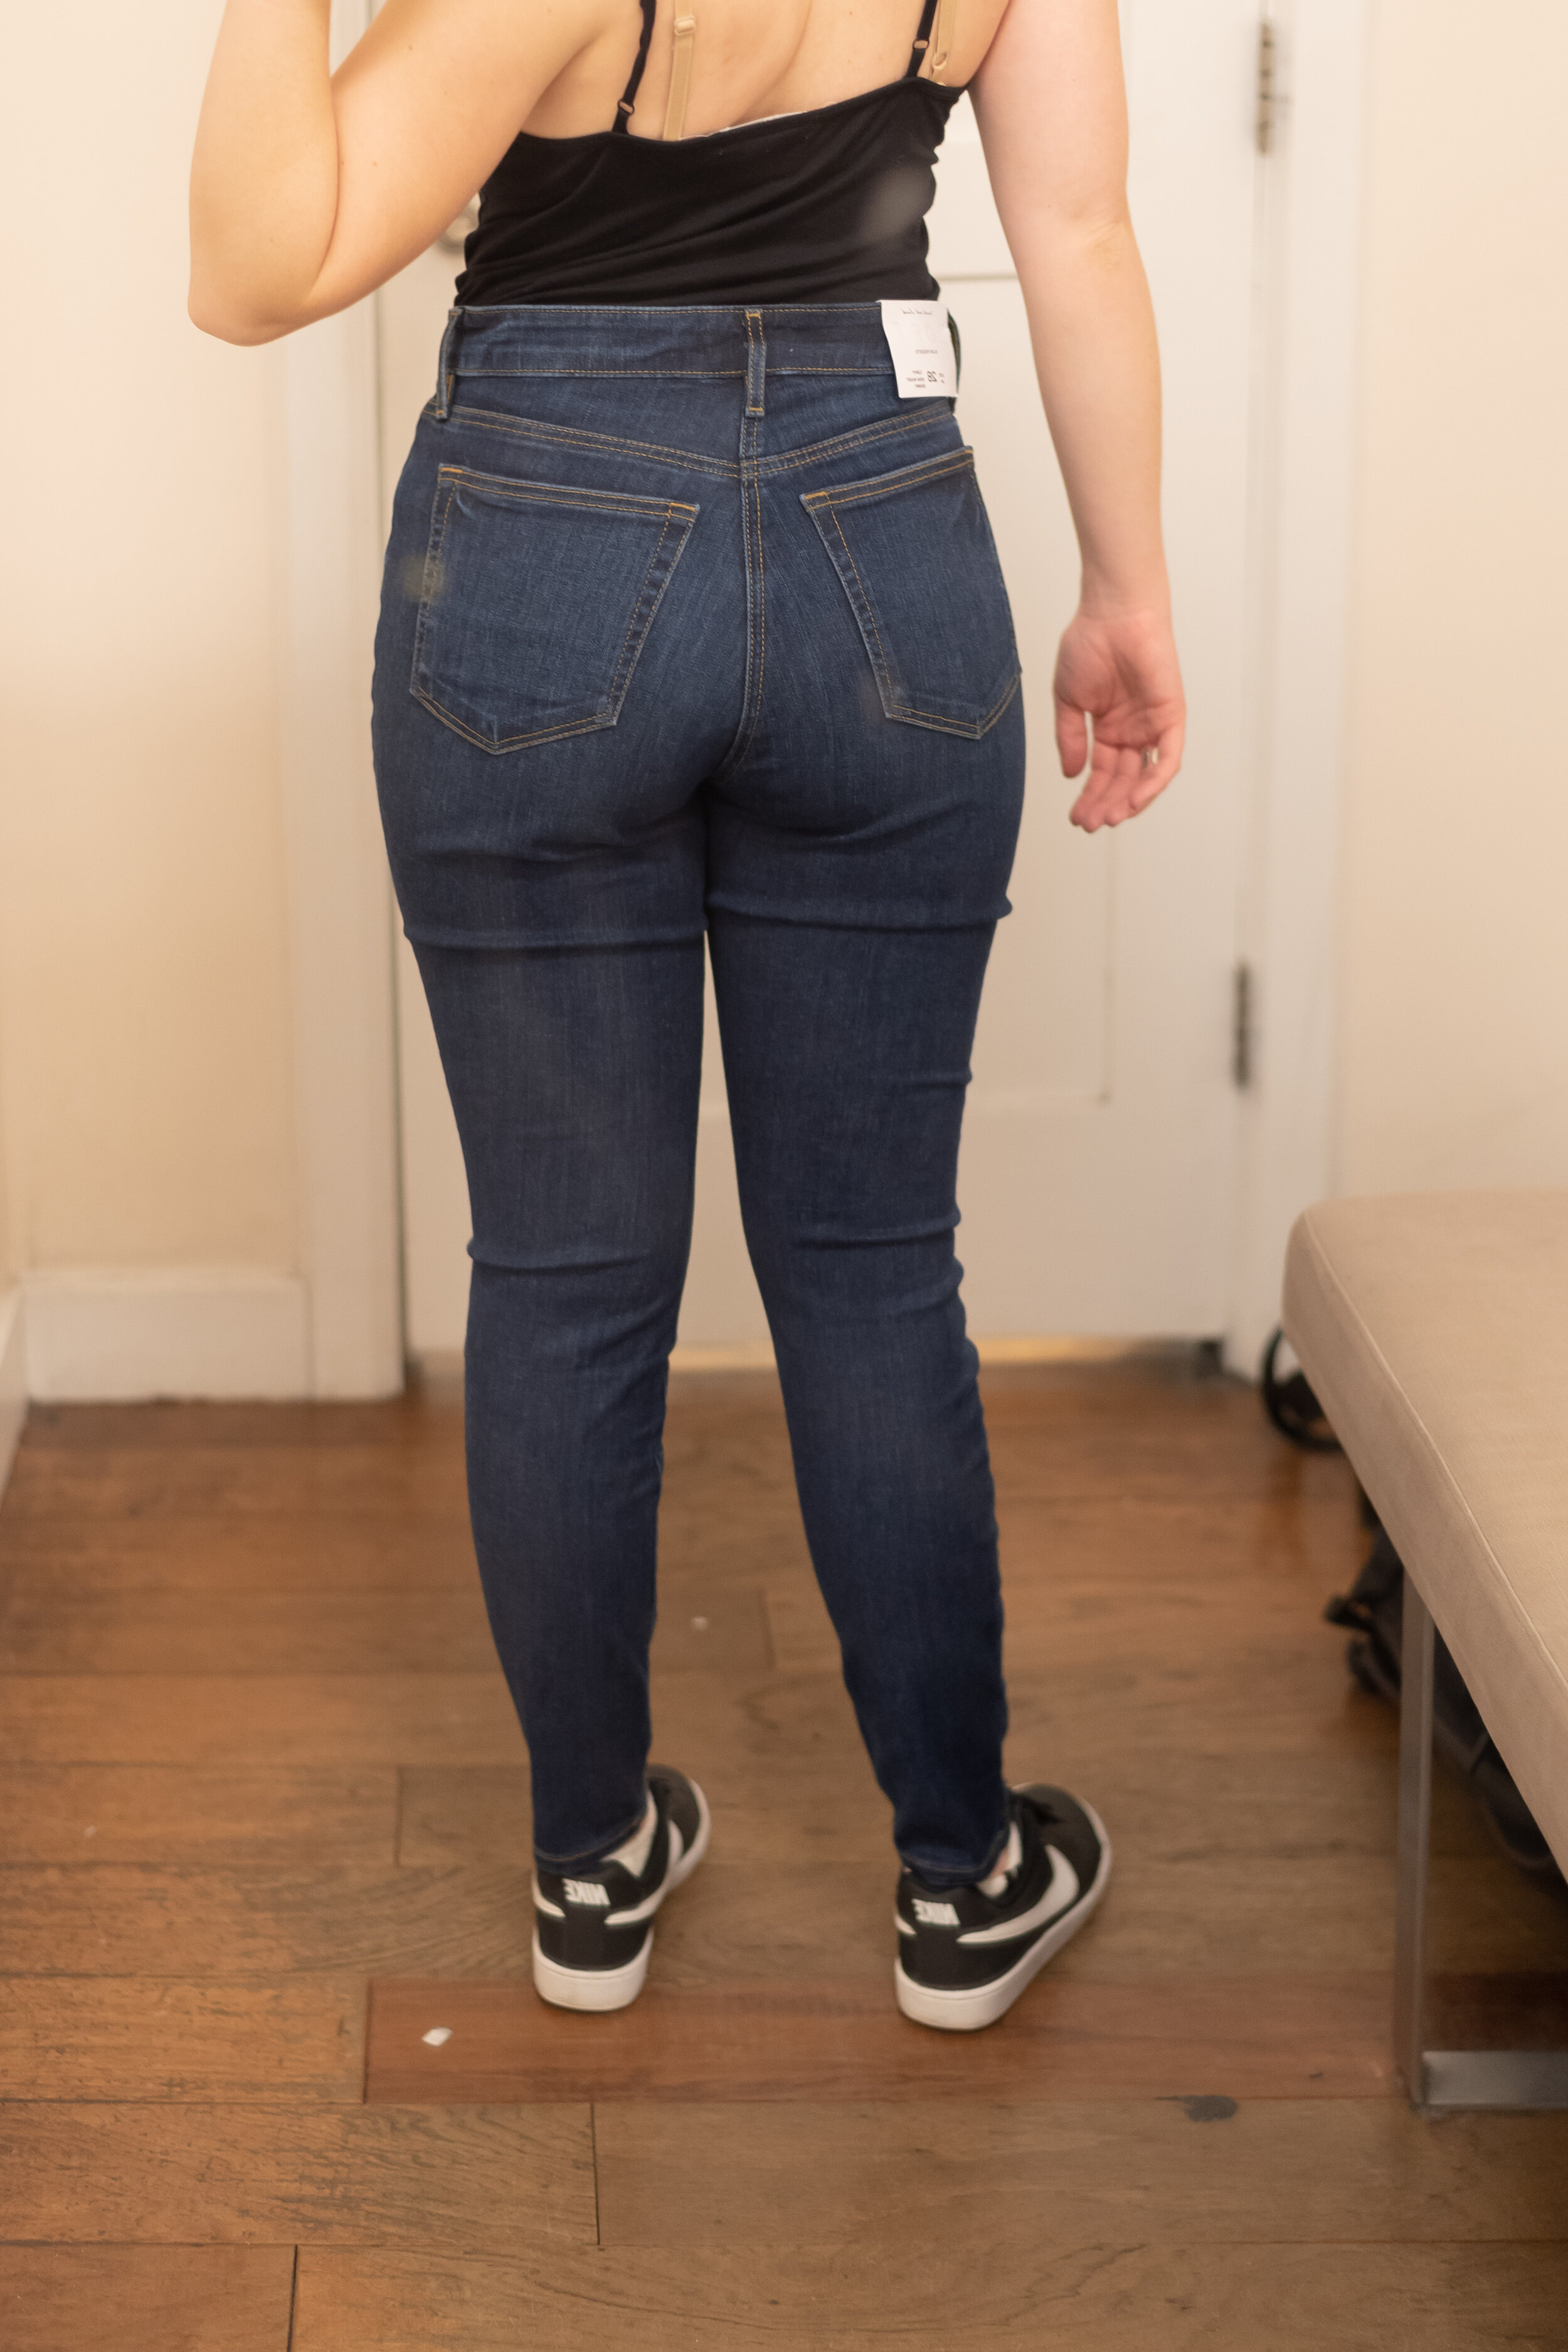 loft jeans size 27